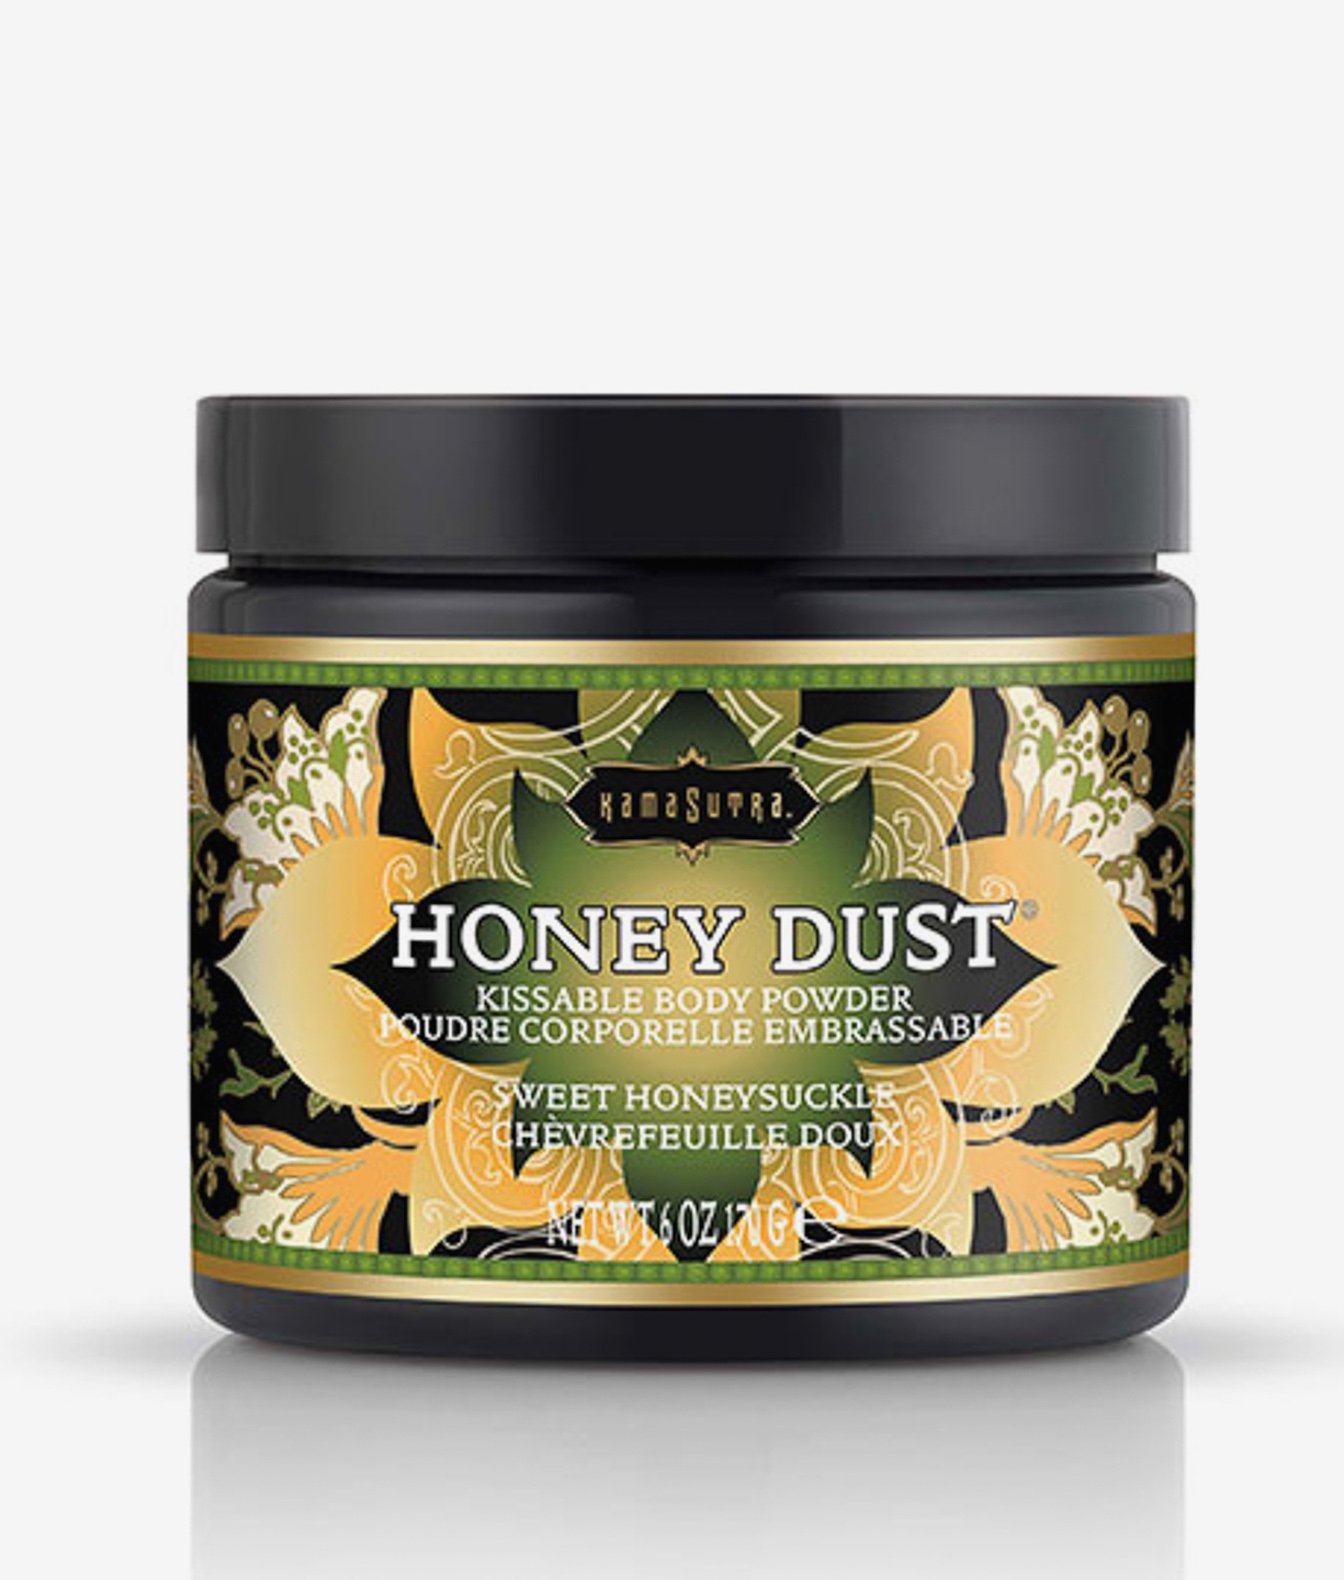 Kama Sutra Honey dust pyłek do gry wstępnej